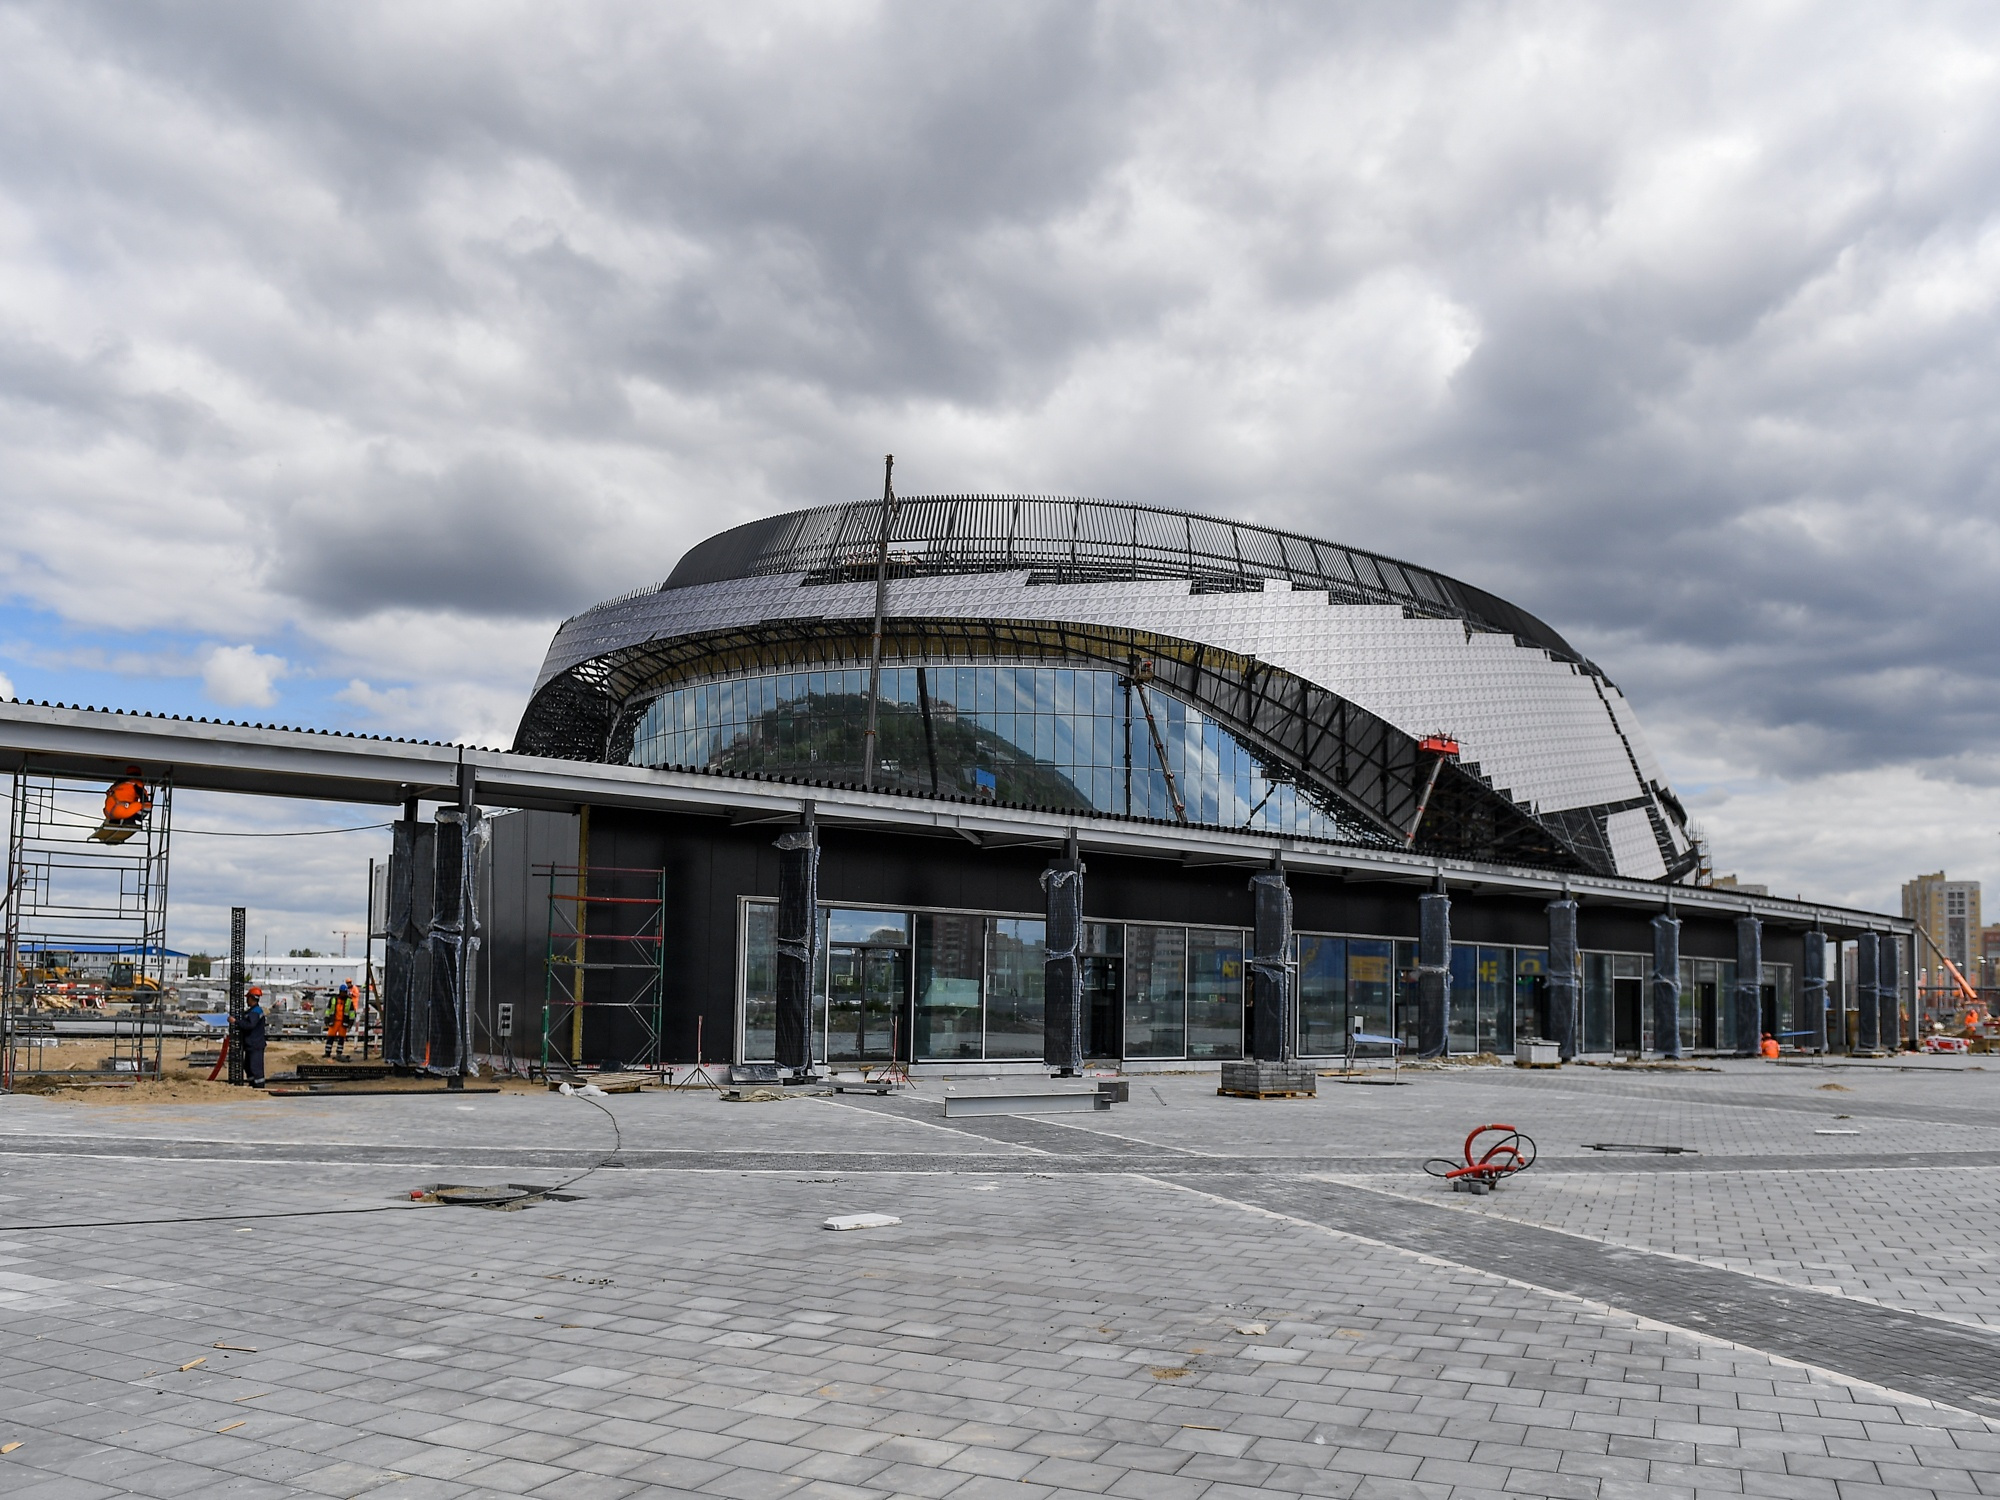 Так выглядит строящаяся арена в Омске — одном из городов, который должен был принять МЧМ-2023